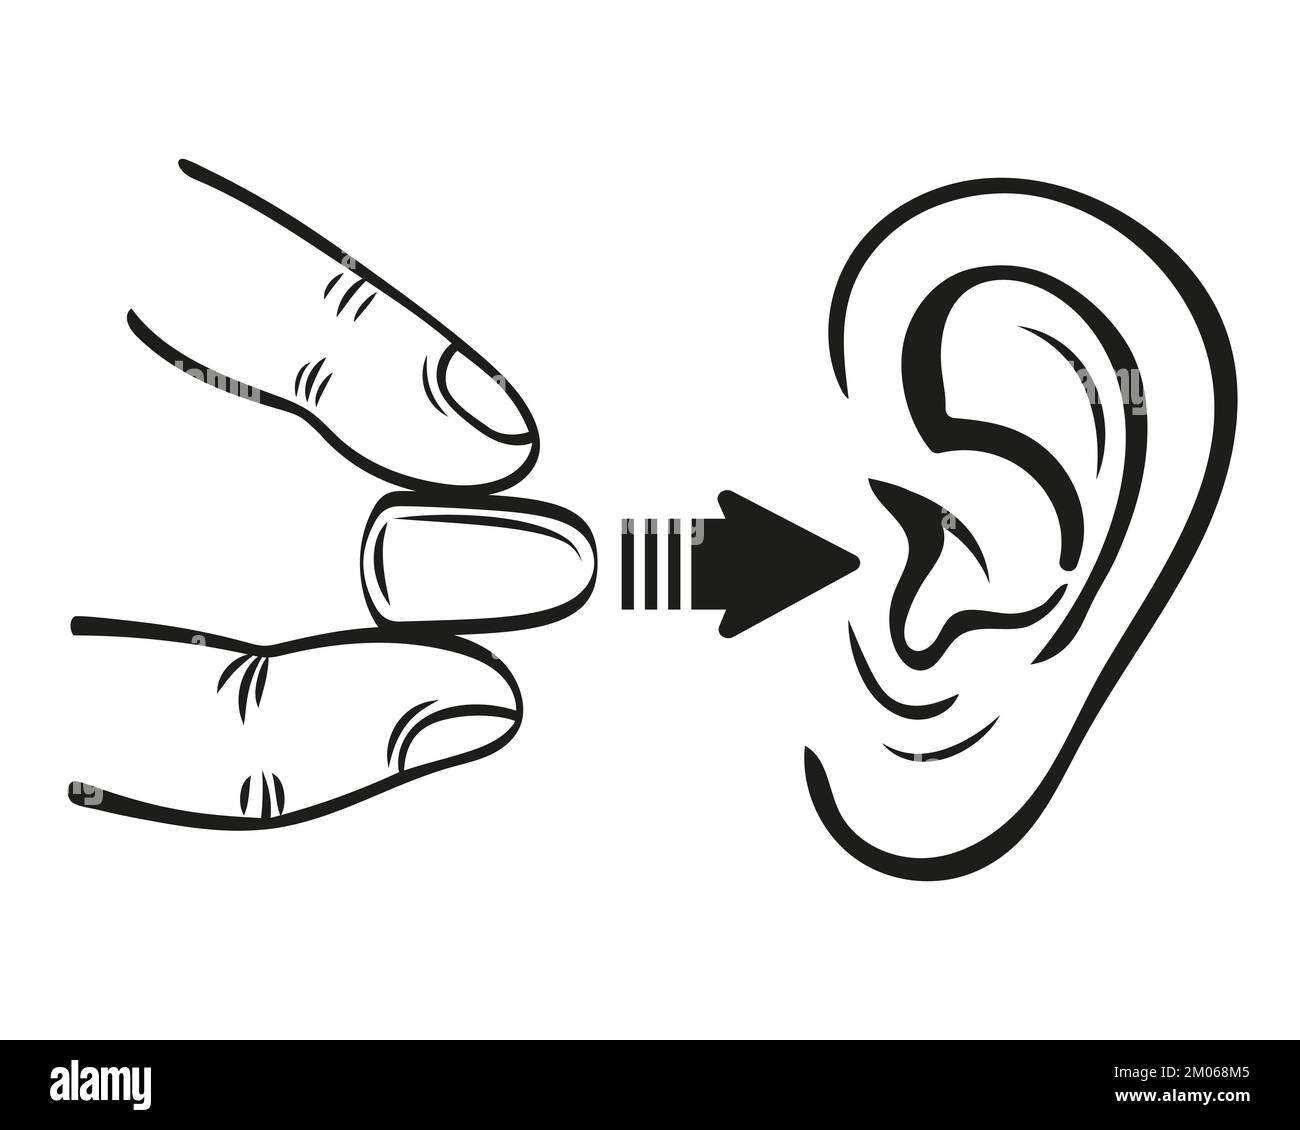 Inserti auricolari per la protezione dell'udito, inserti auricolari in schiuma per ascoltare rumori forti, icona della linea della polvere. Sordità, salute dormire in silenzio. Vettore accessorio personale Illustrazione Vettoriale